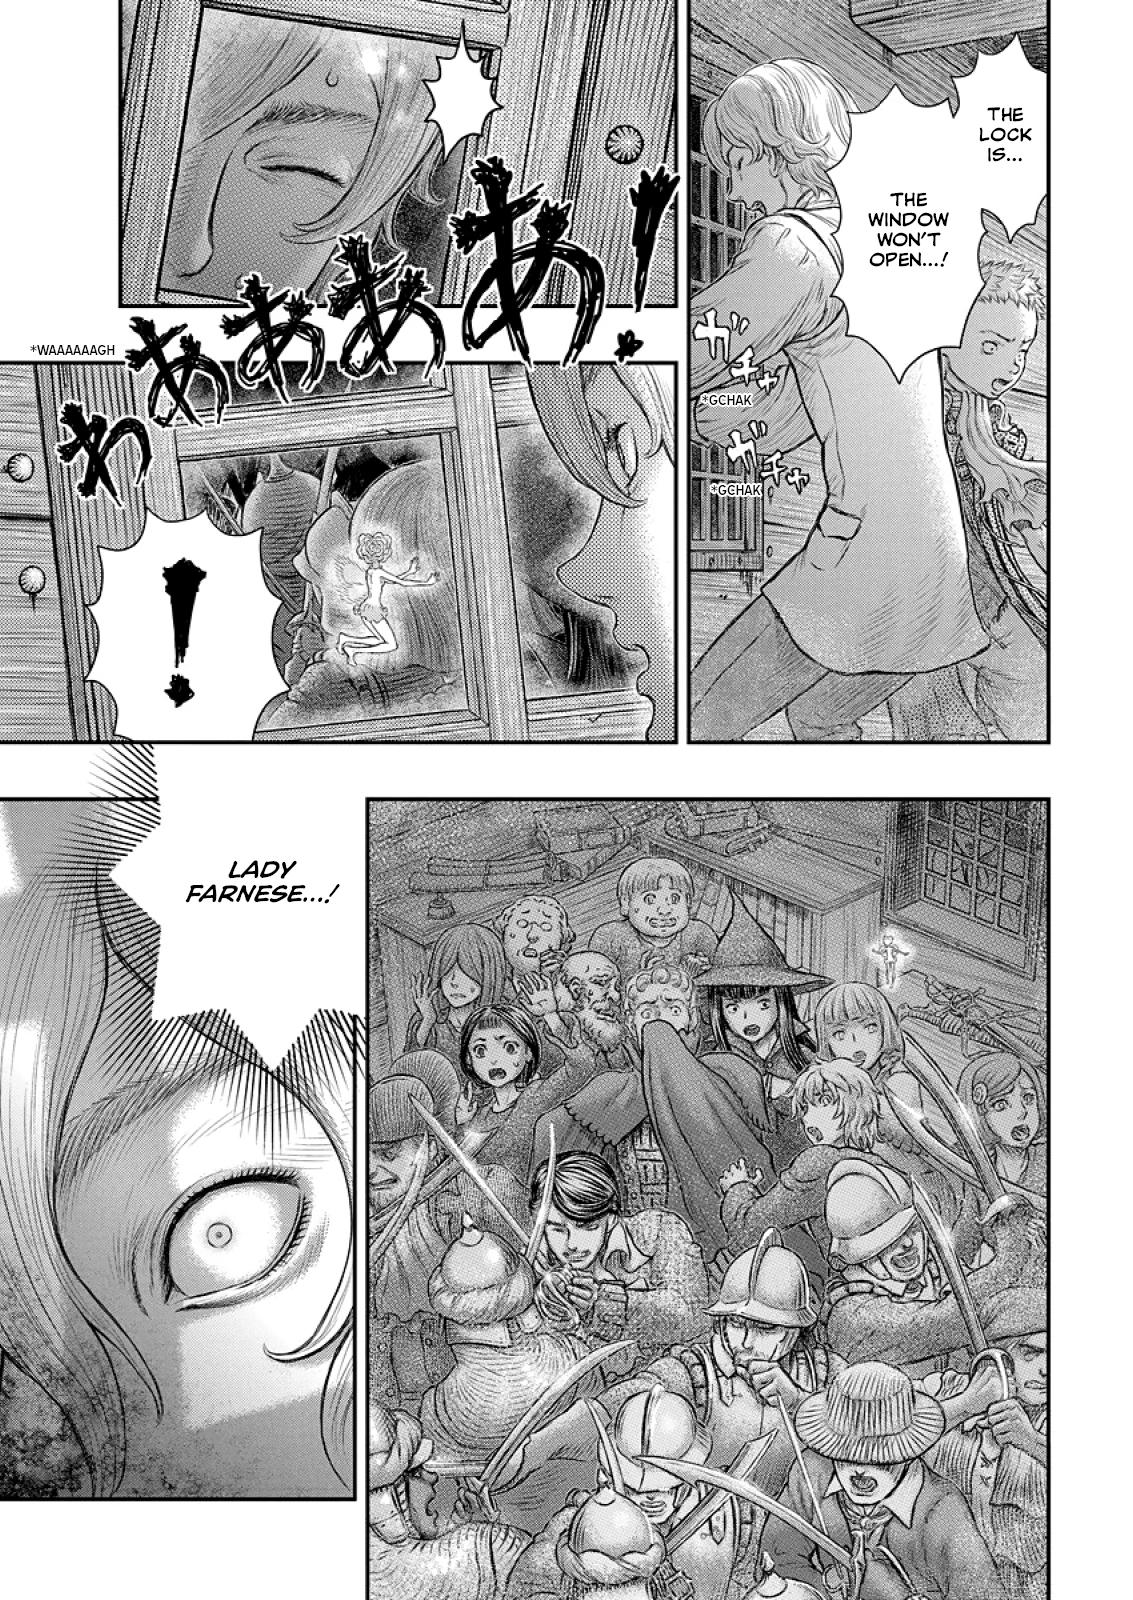 Berserk Manga Chapter 374 image 10